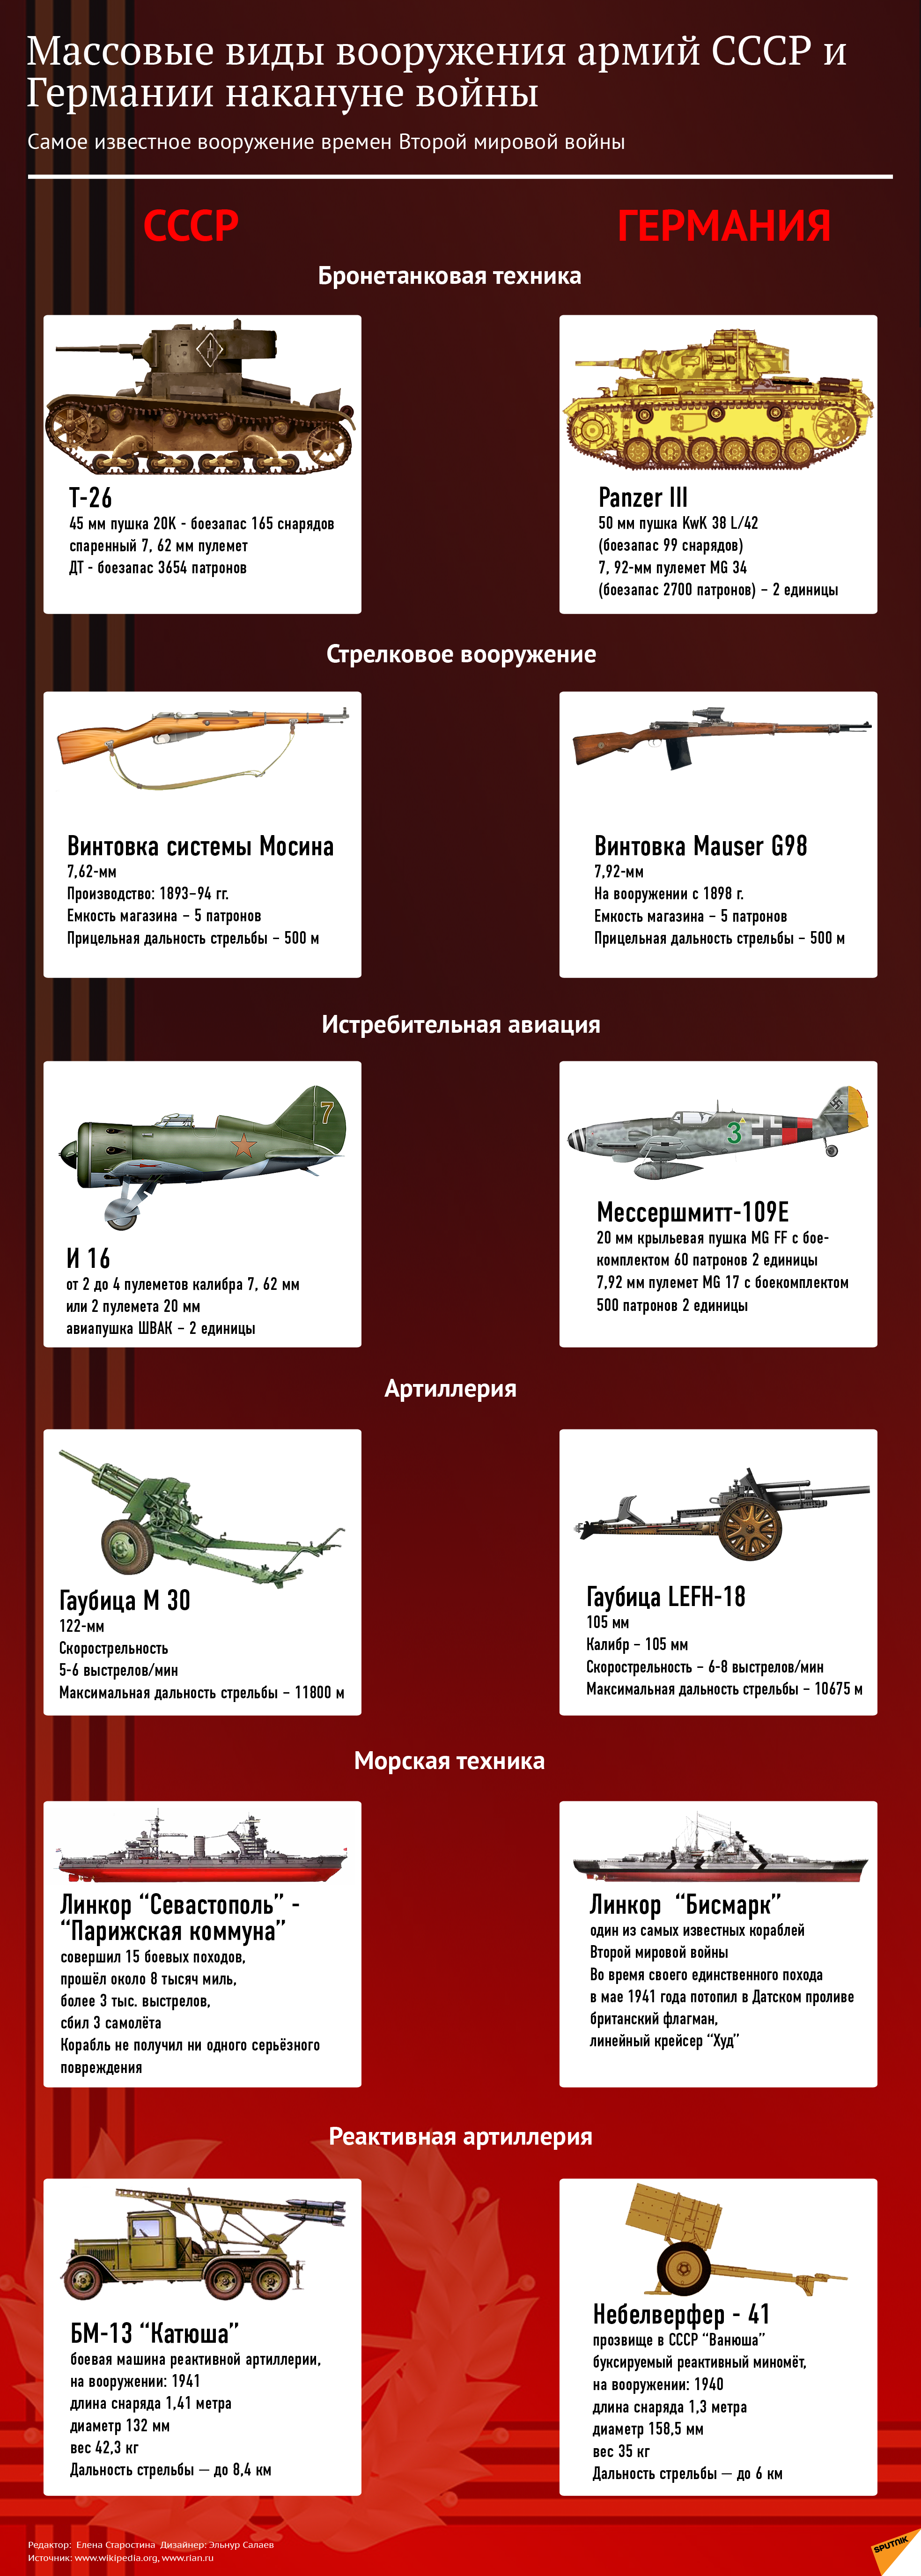 Вооружение Советской Армии в годы ВОВ - Sputnik Азербайджан